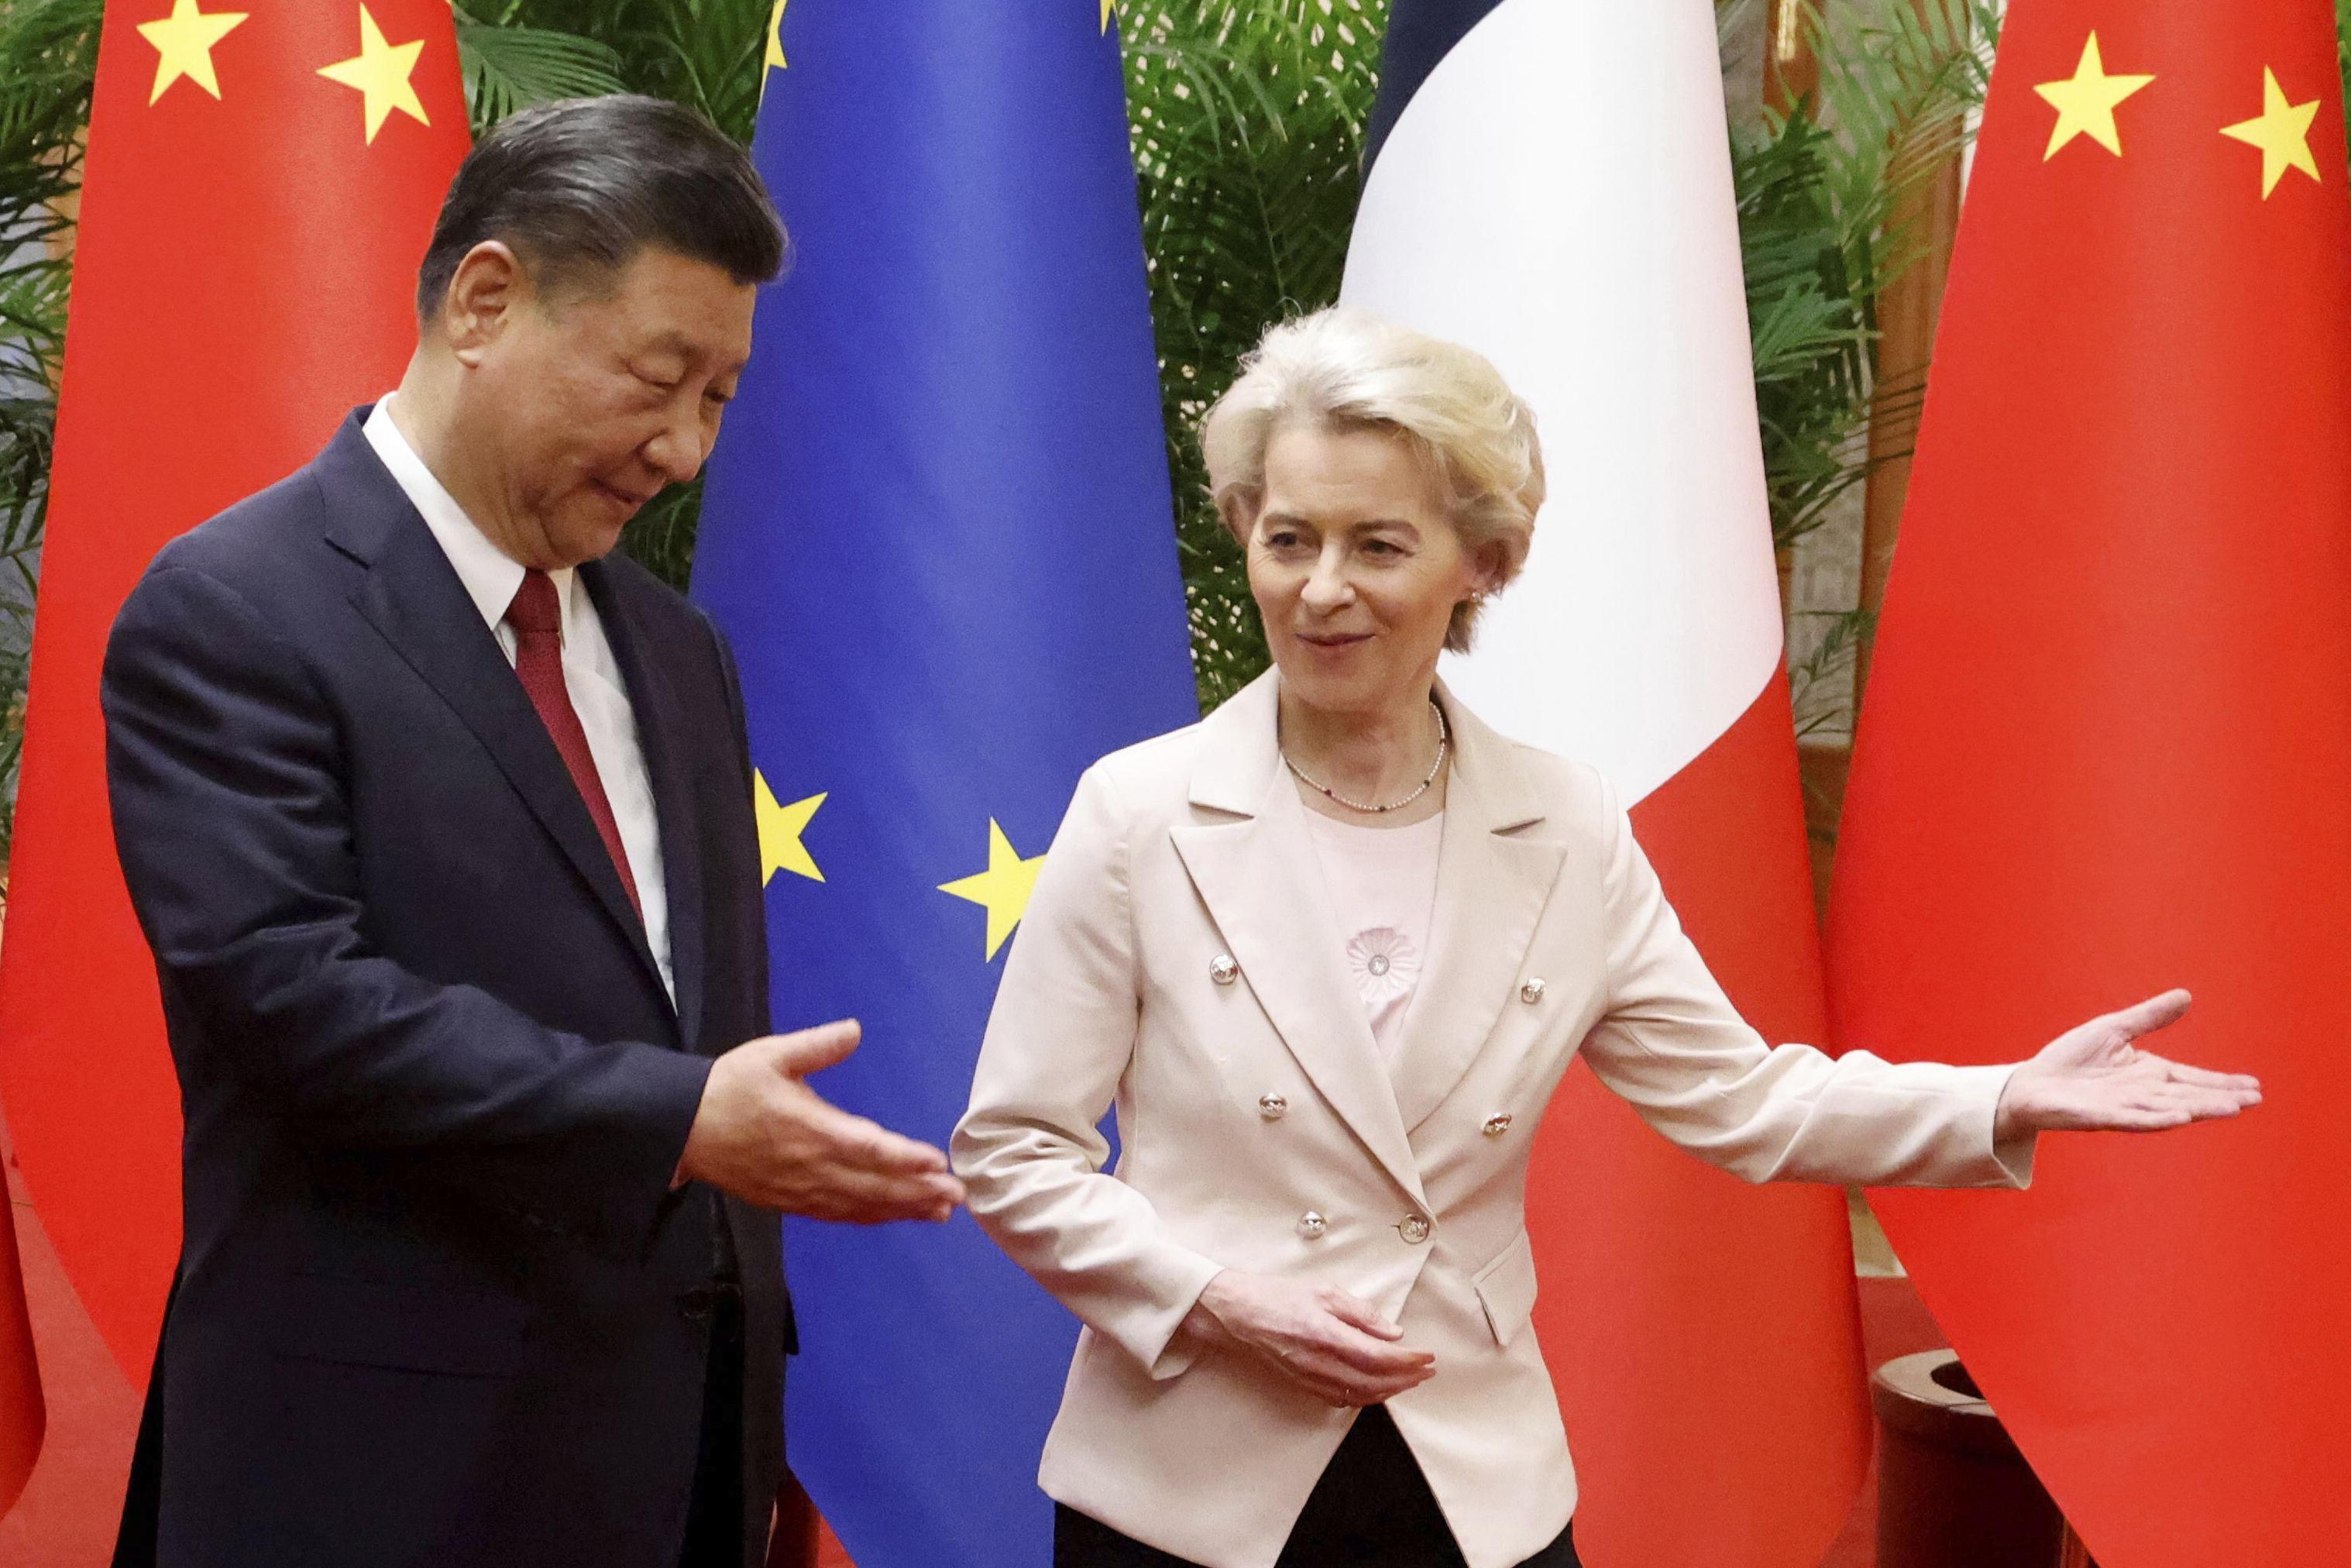 La UE perfila su estrategia para la rivalidad sistémica con China: «Realista y firme pero no conflictiva»